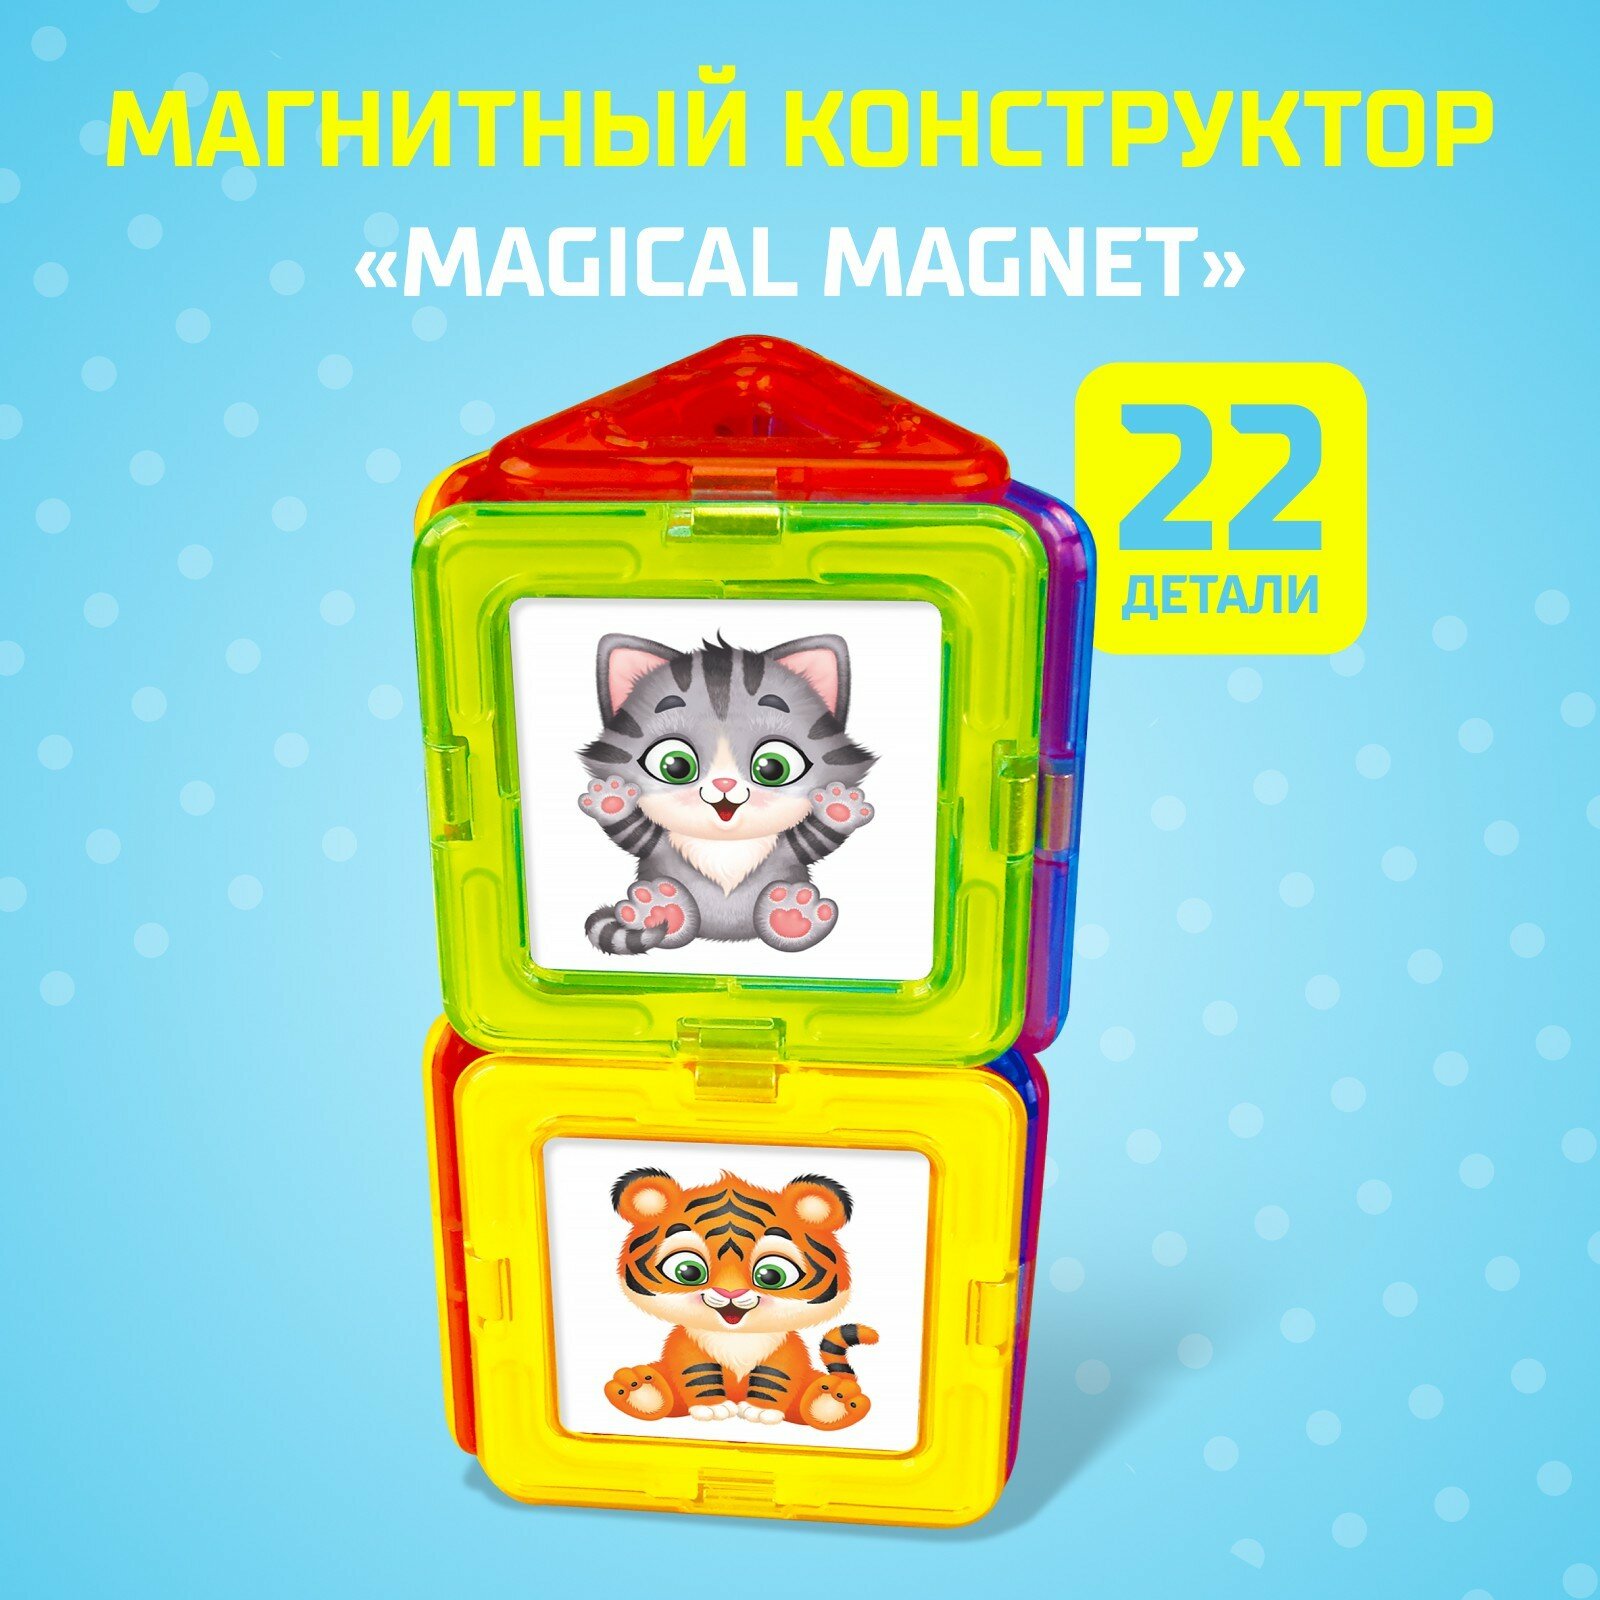 Магнитный конструктор Magical Magnet 22 детали детали матовые